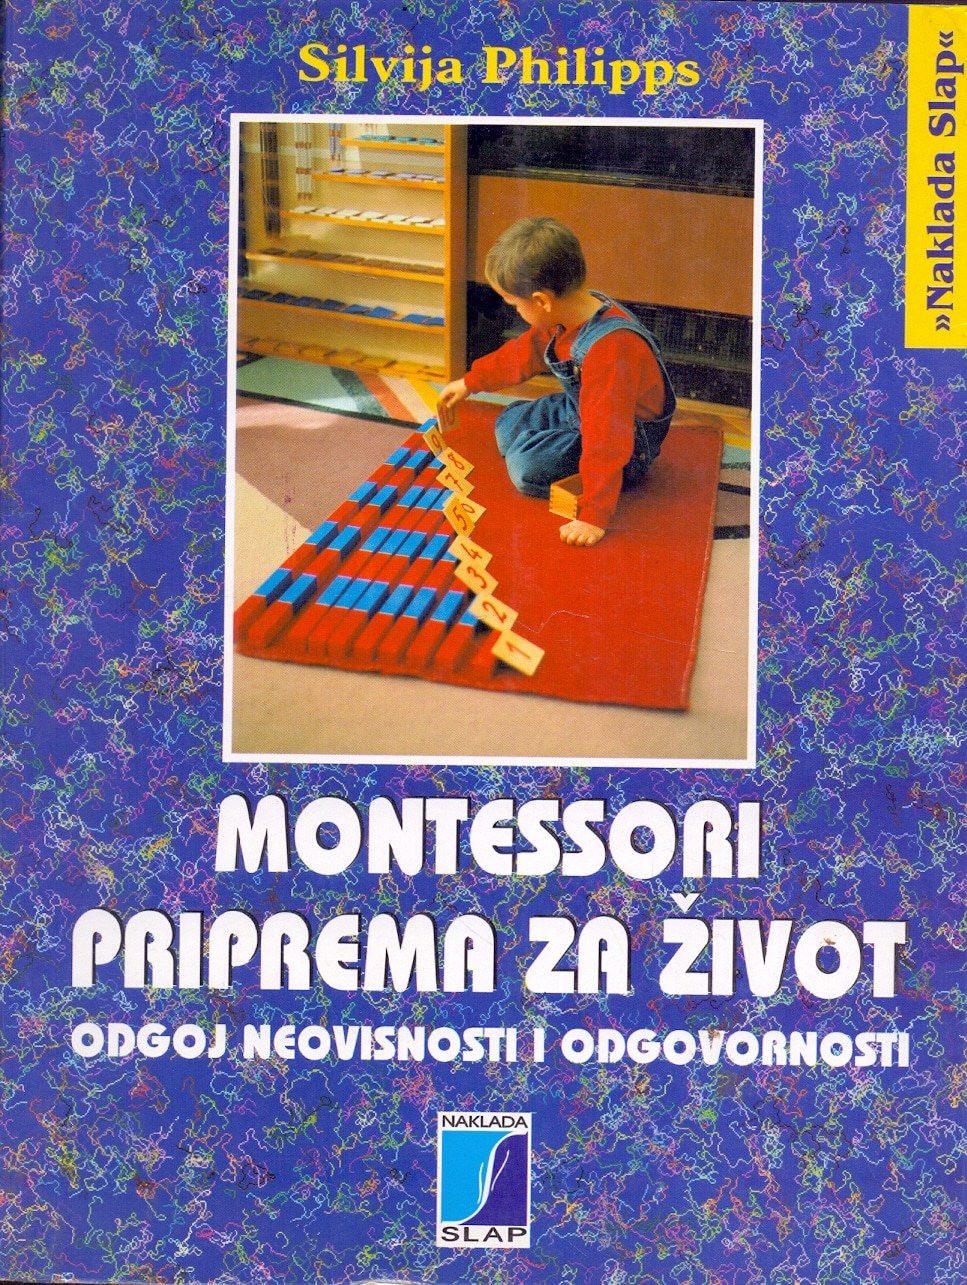 Montessori - priprema za život Silvija Philipps